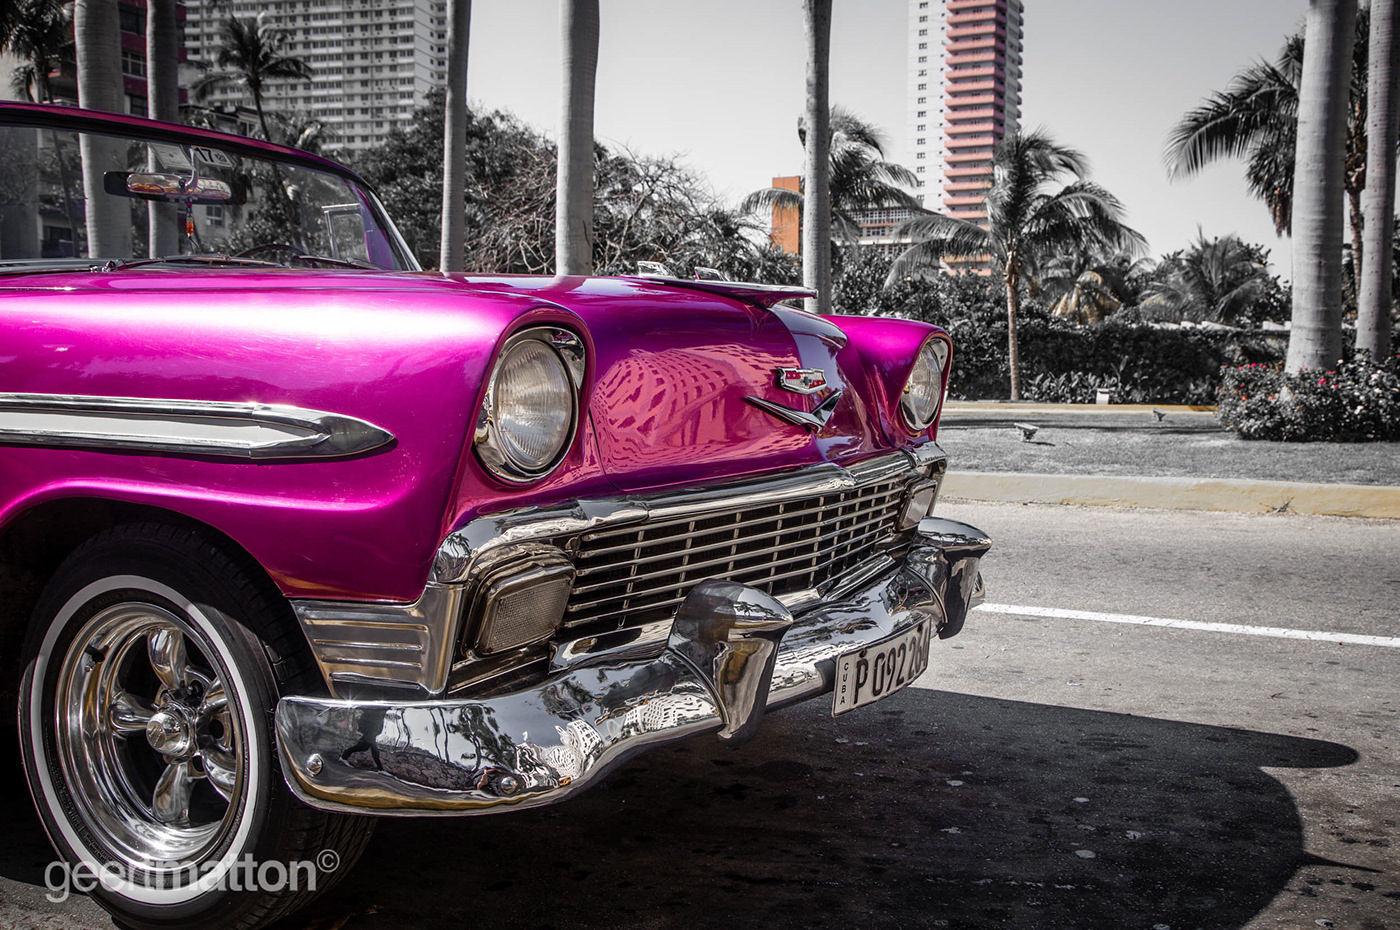 Cars cuba kastart geertmatton beeldmaker Travel Photography  Photojournalist carabean portfolio